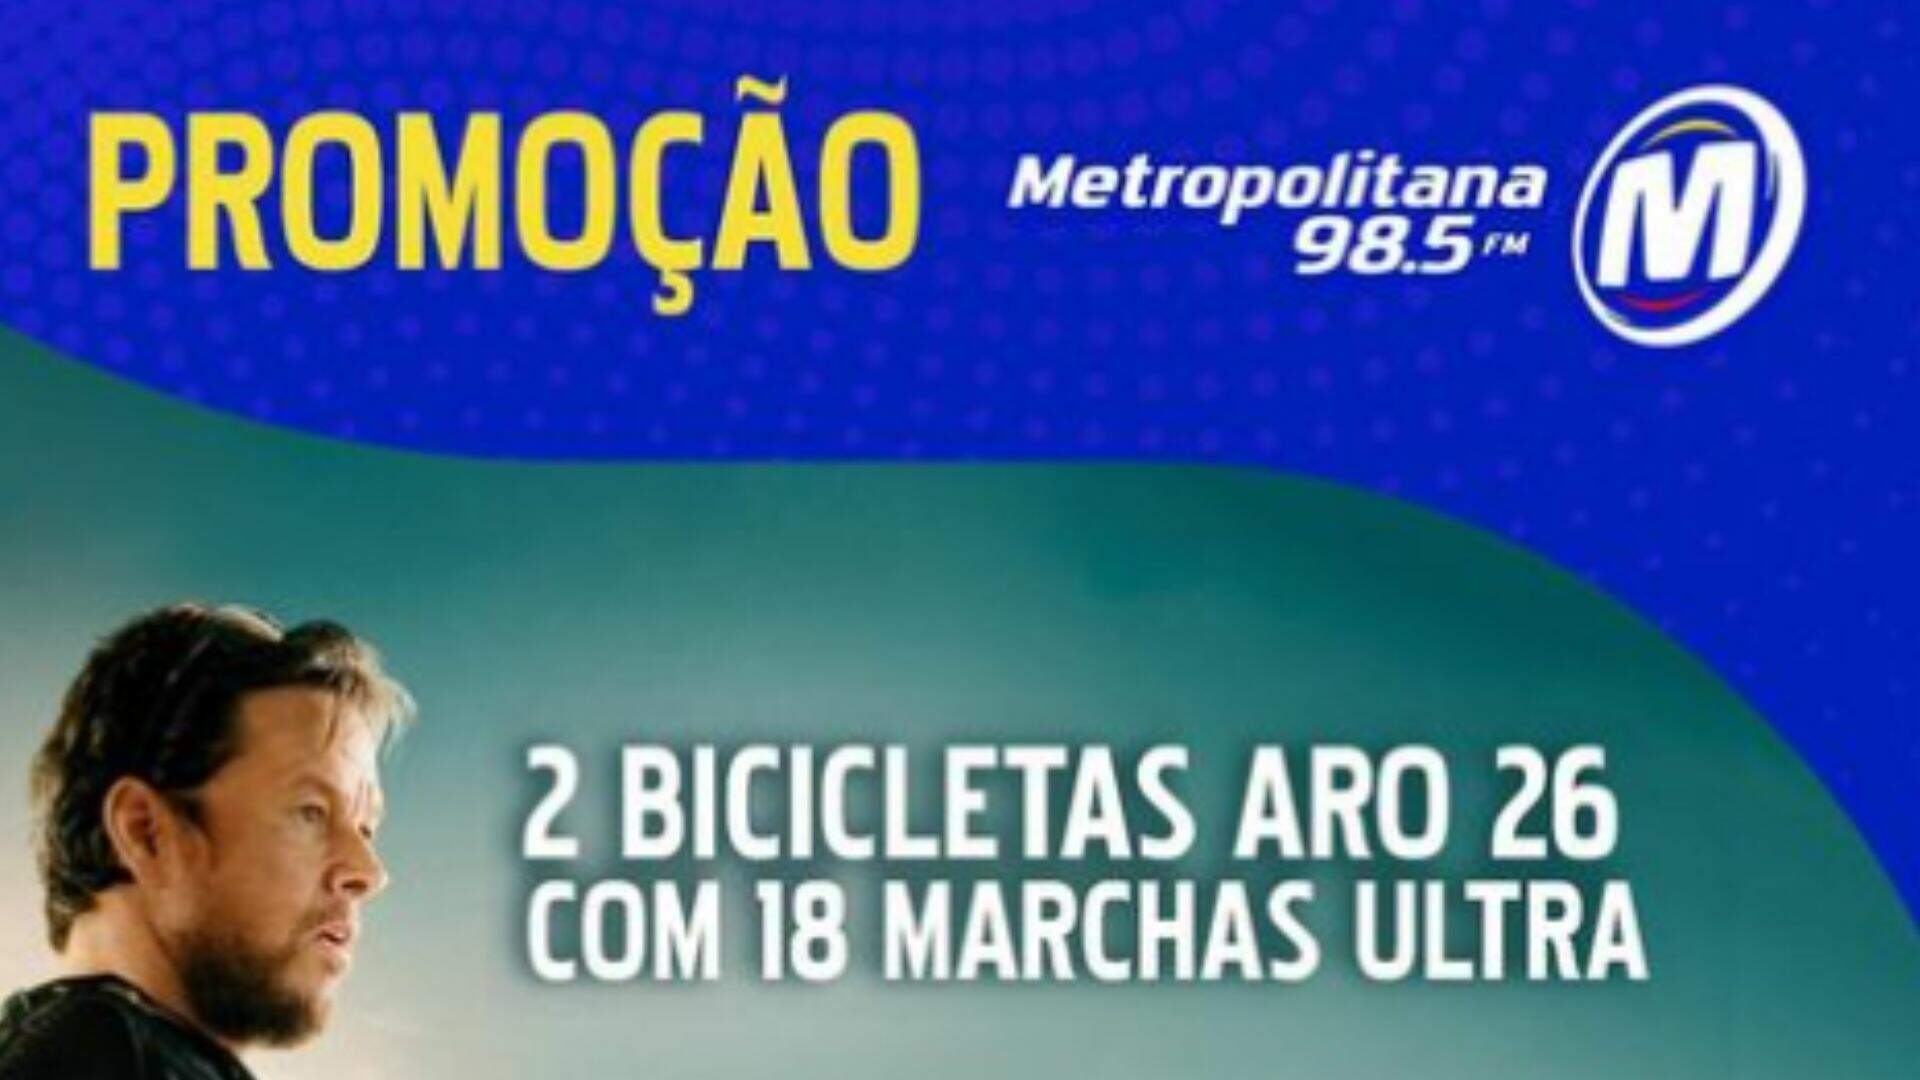 [ENCERRADA] Promoção: 2 BICICLETAS ARO 26 COM 18 MARCHAS ULTRA NA METROPOLITANA - Metropolitana FM